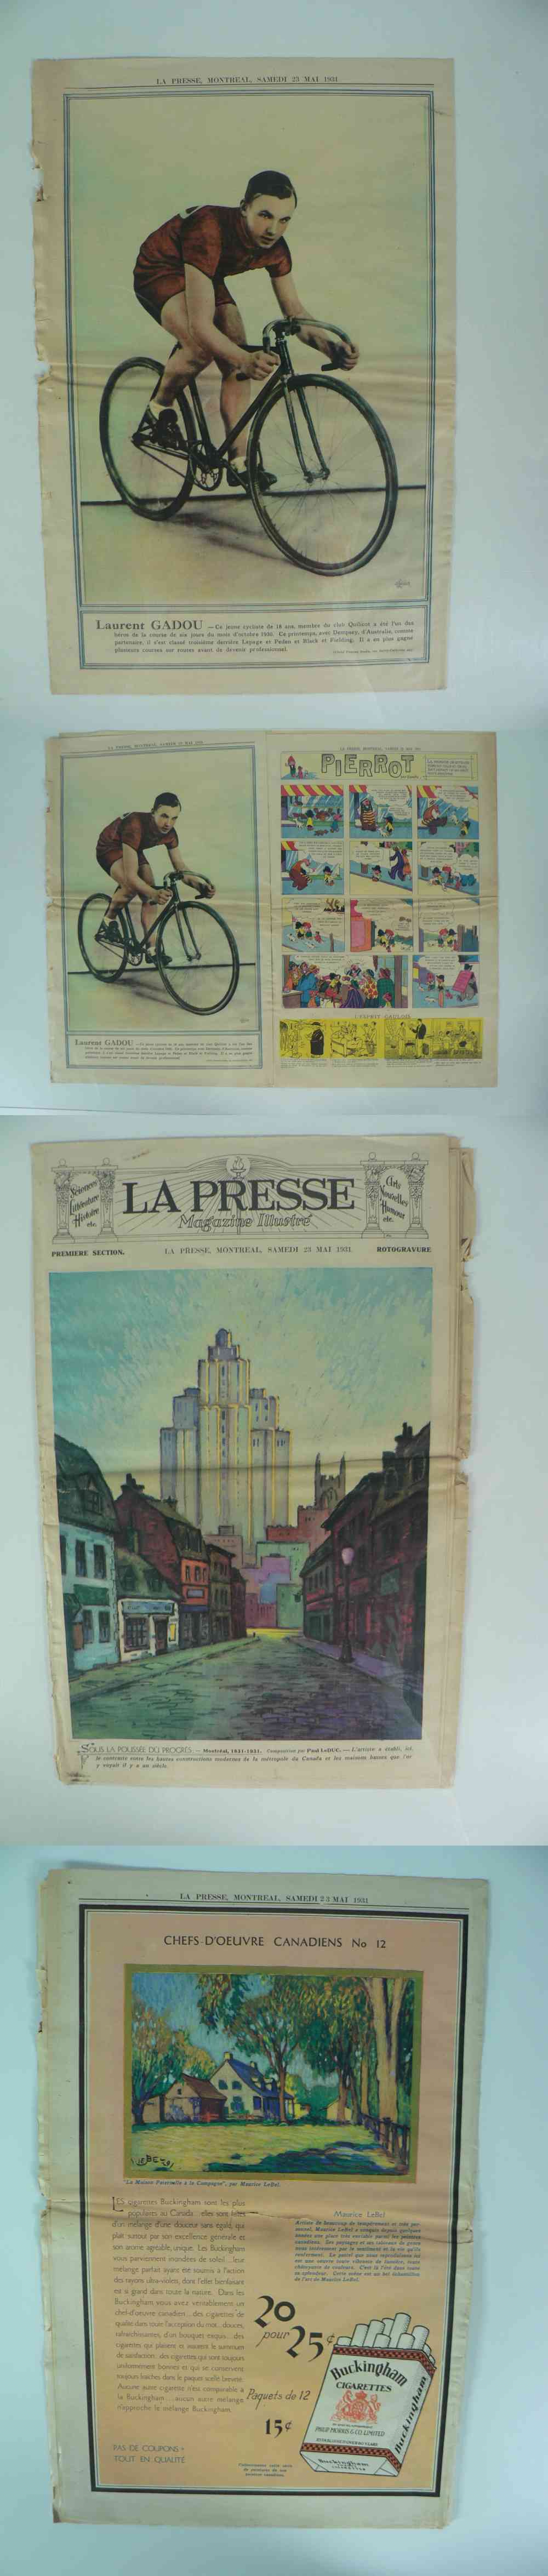 1931 LAPRESSE FULL NEWSPAPER INSIDE PHOTO L. GADOU photo